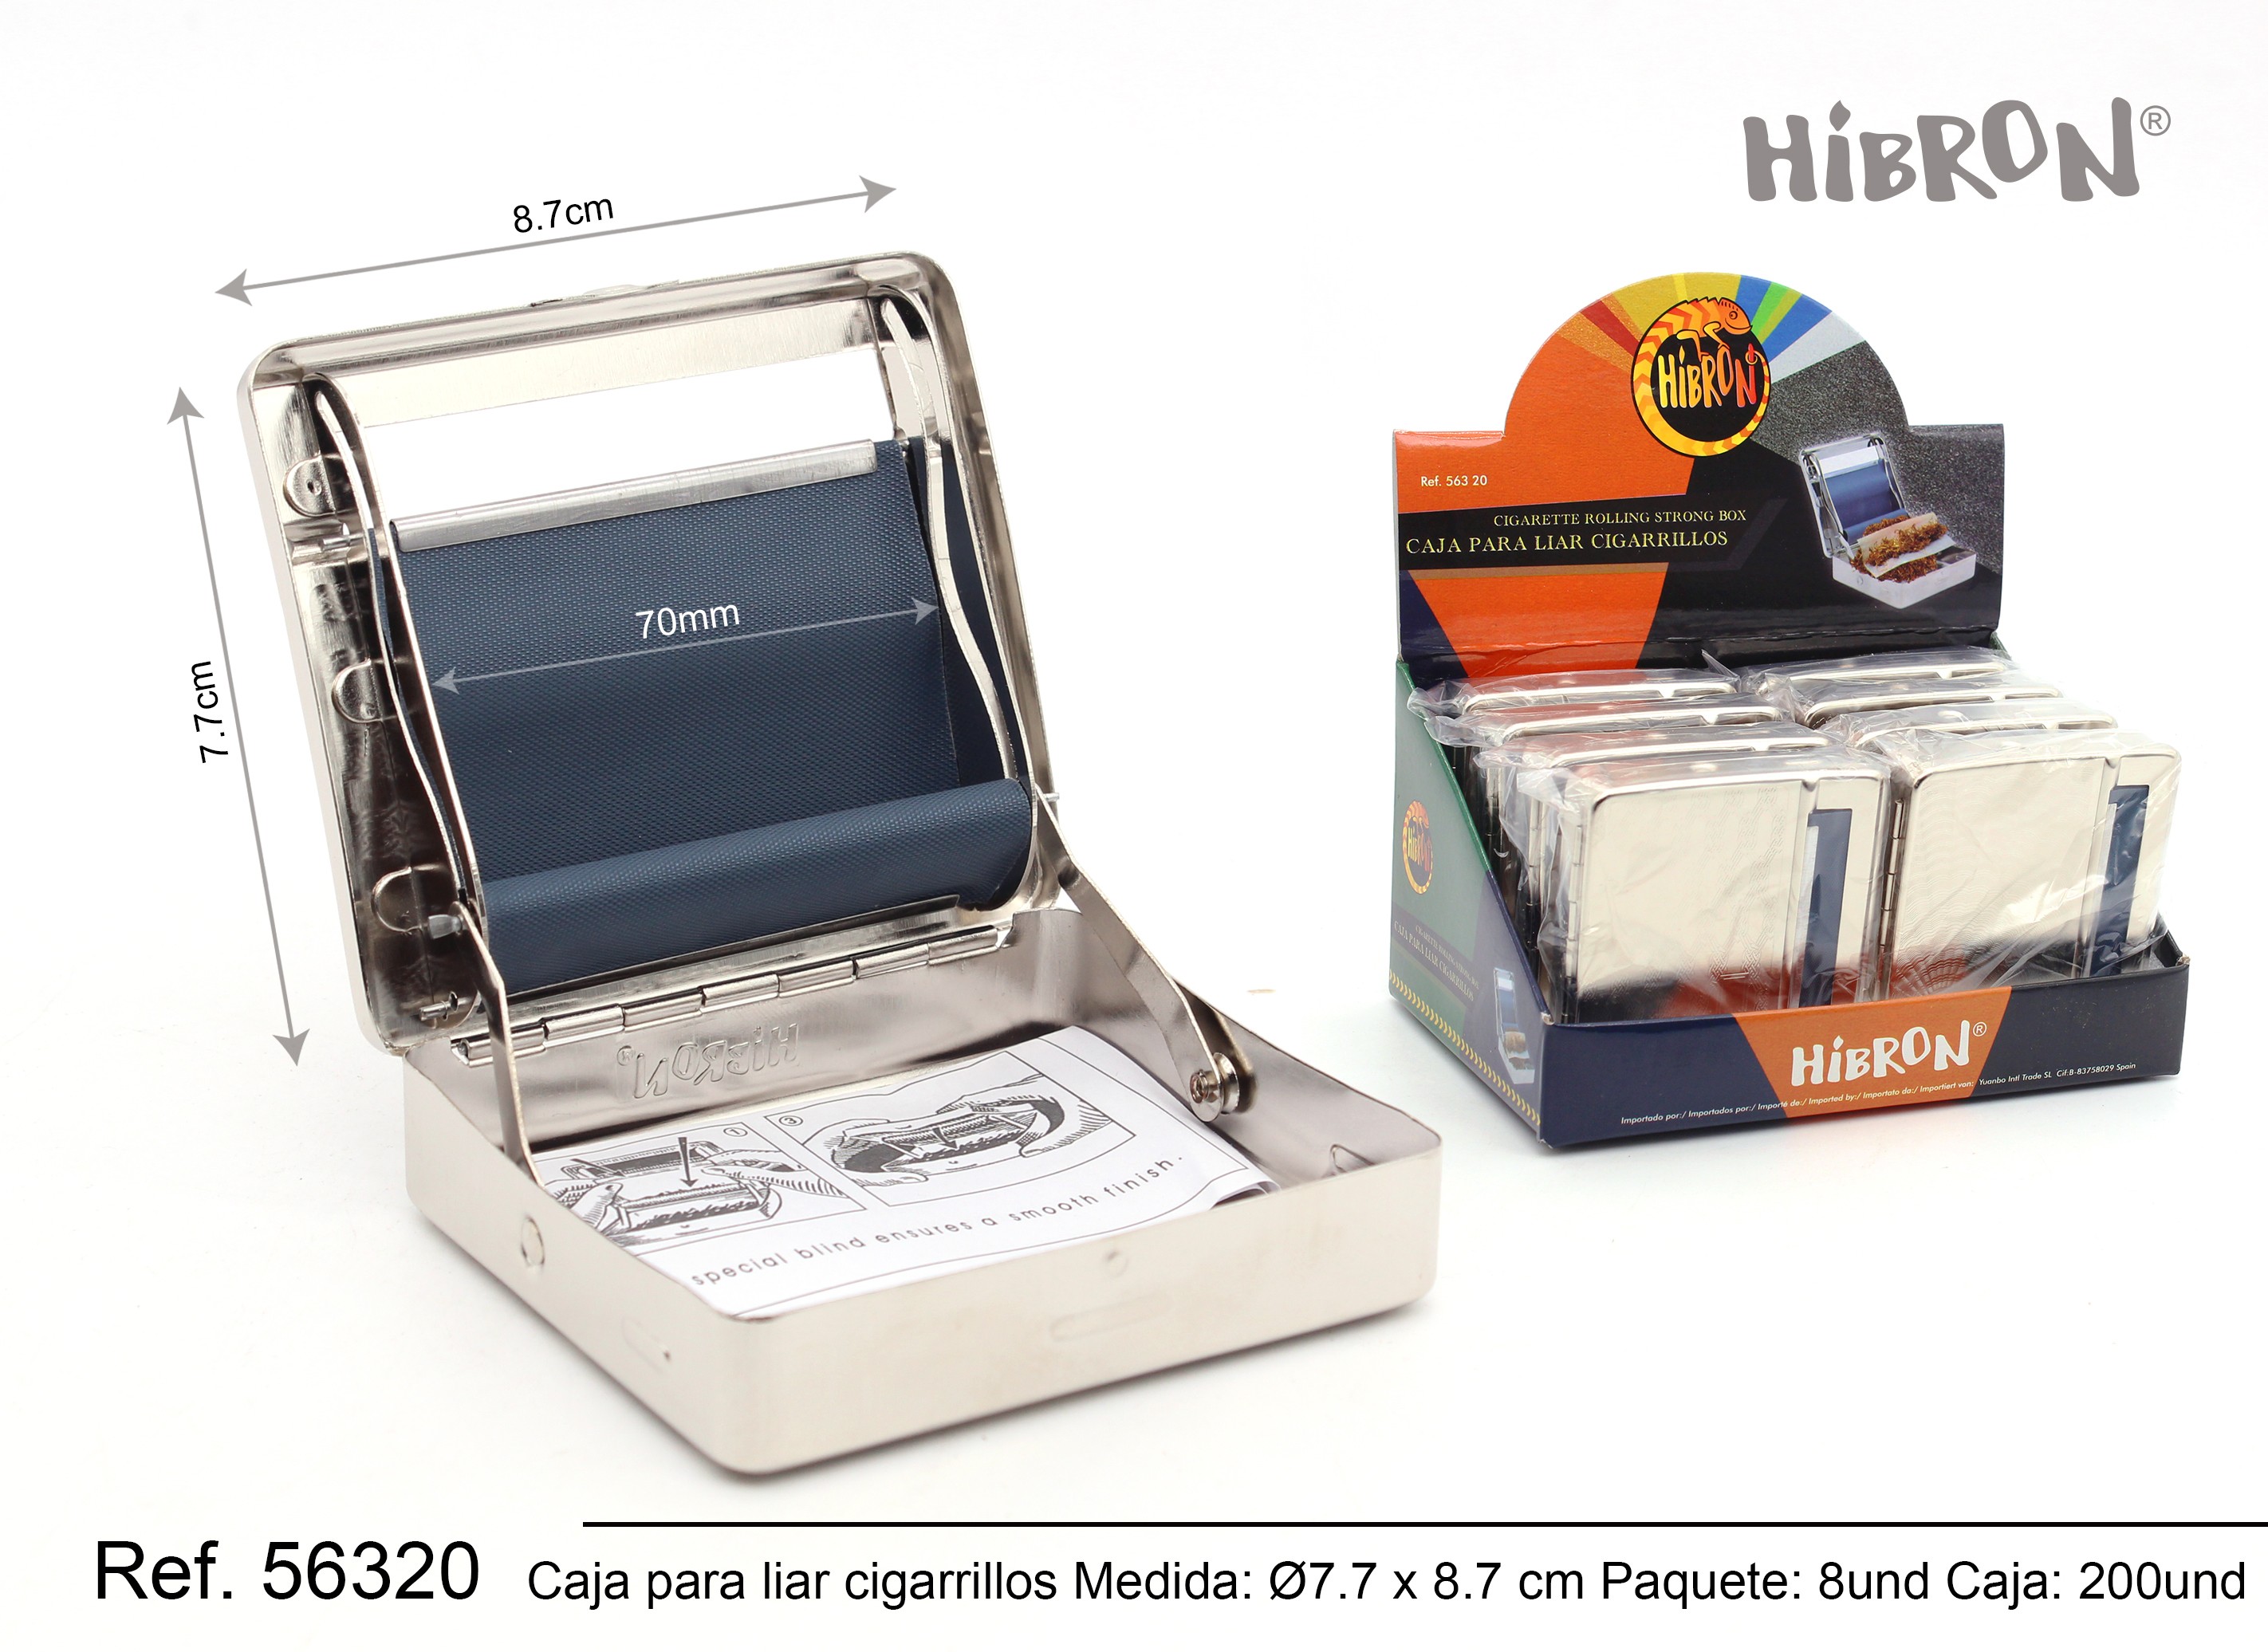 HIBRON, Maquina de liar 78mm,1901659-56304,1x24 